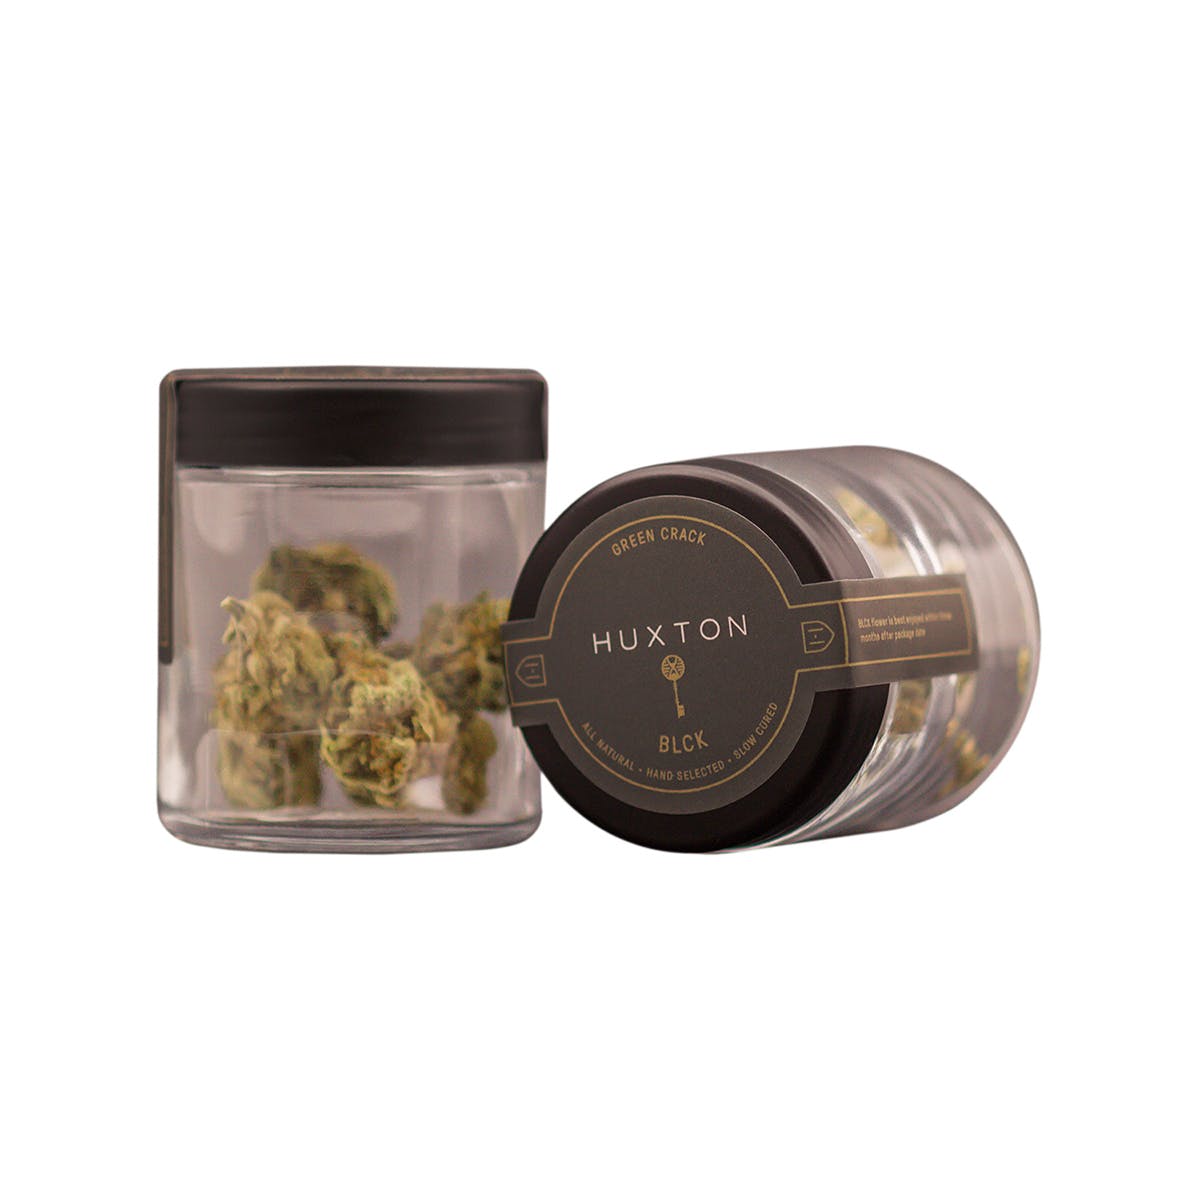 marijuana-dispensaries-the-prime-leaf-in-tucson-blck-flower-2c-green-crack